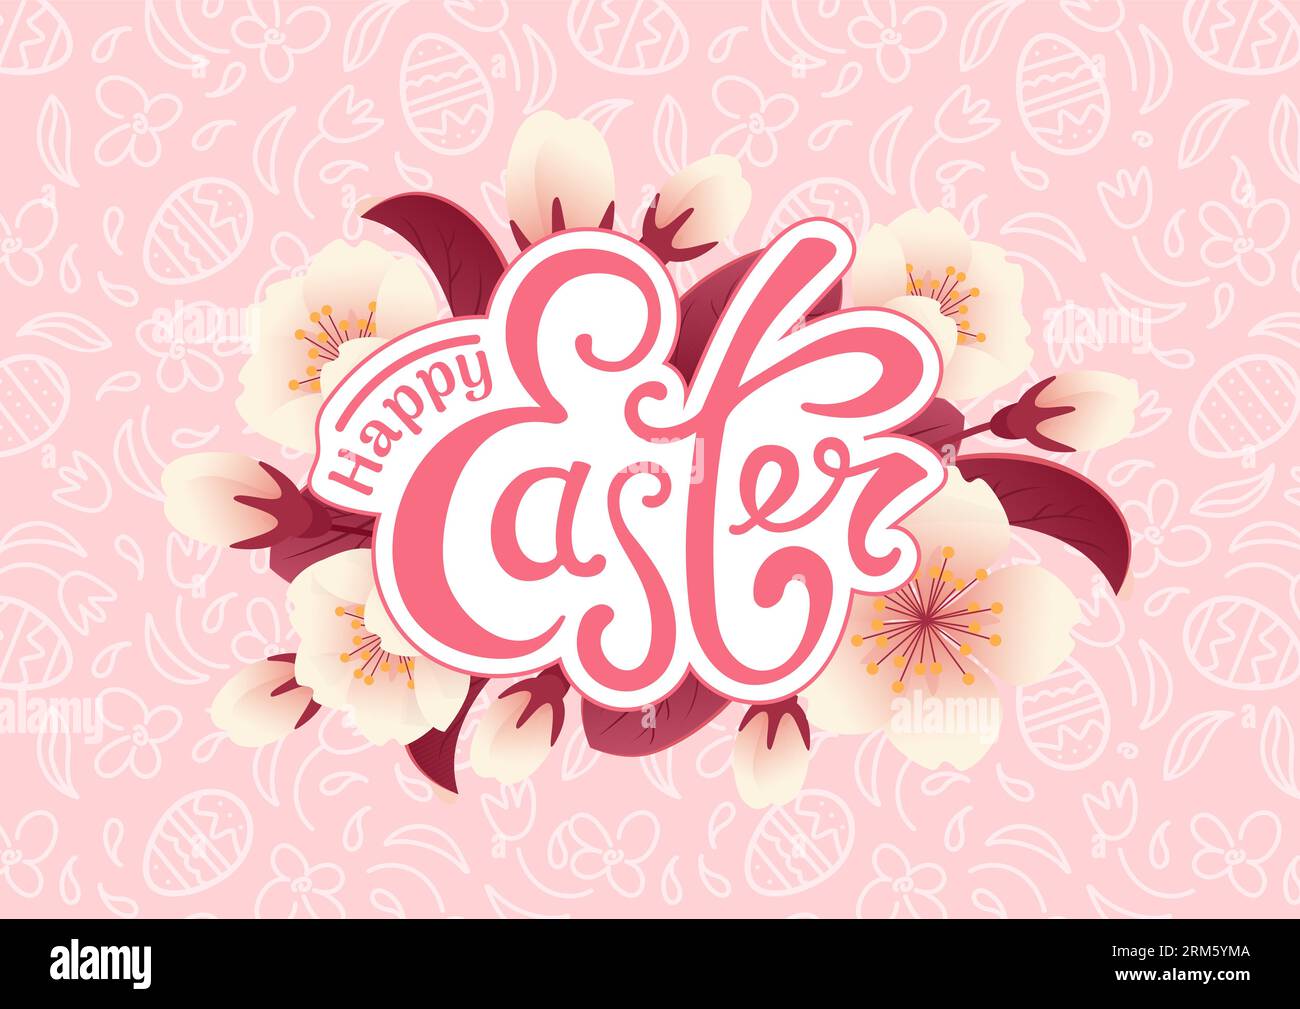 Buona pasqua. Stile realistico in fiore di ciliegio. Uova di cioccolato, fiori e motivi monocromatici rosa. Stile Doodle. Lettering vintage. Per poster, cartoline Illustrazione Vettoriale